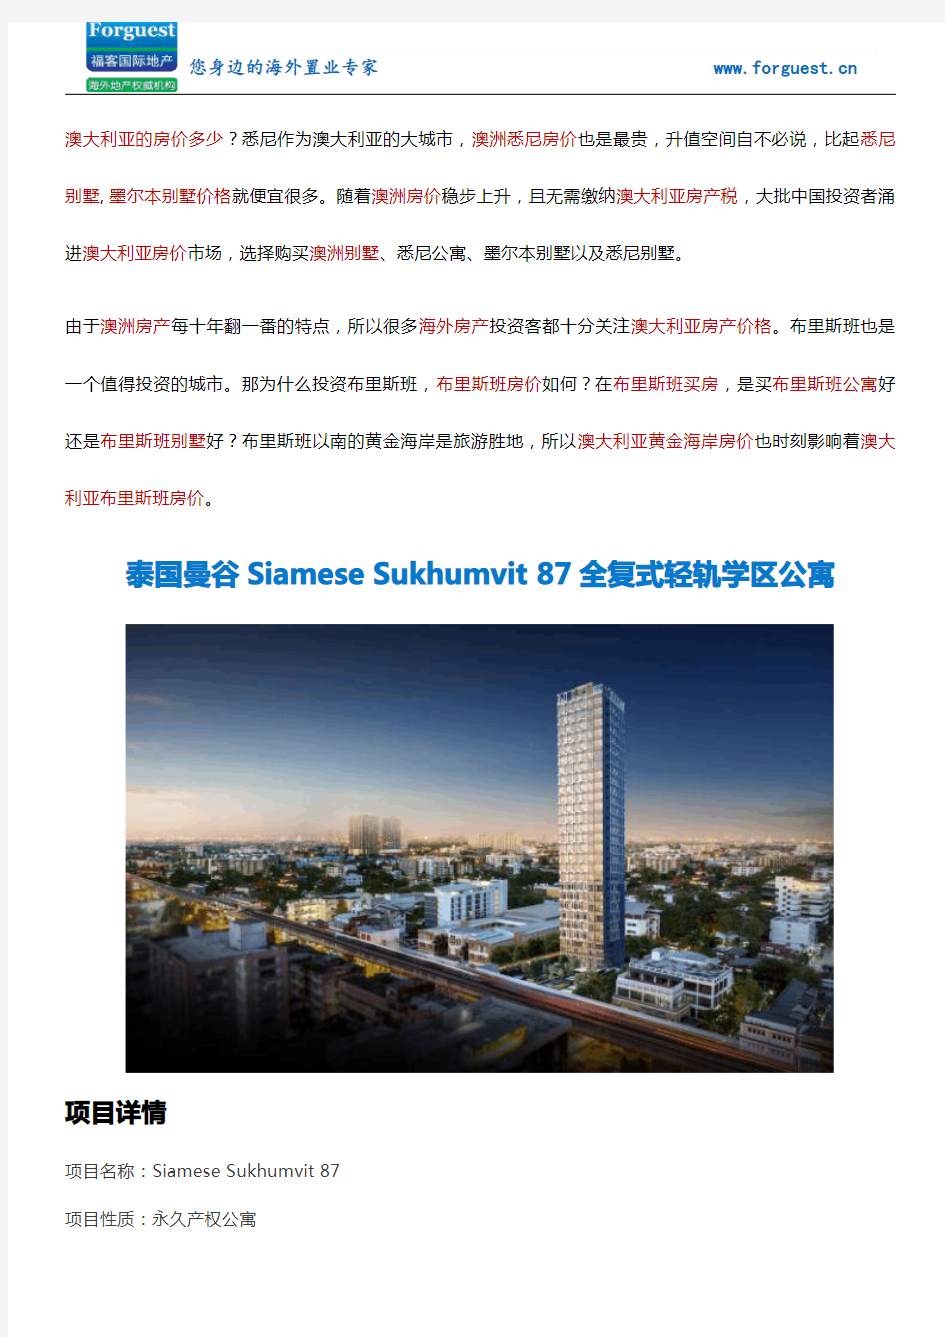 【福客海外房产】泰国曼谷Siamese Sukhumvit 87全复式轻轨学区公寓